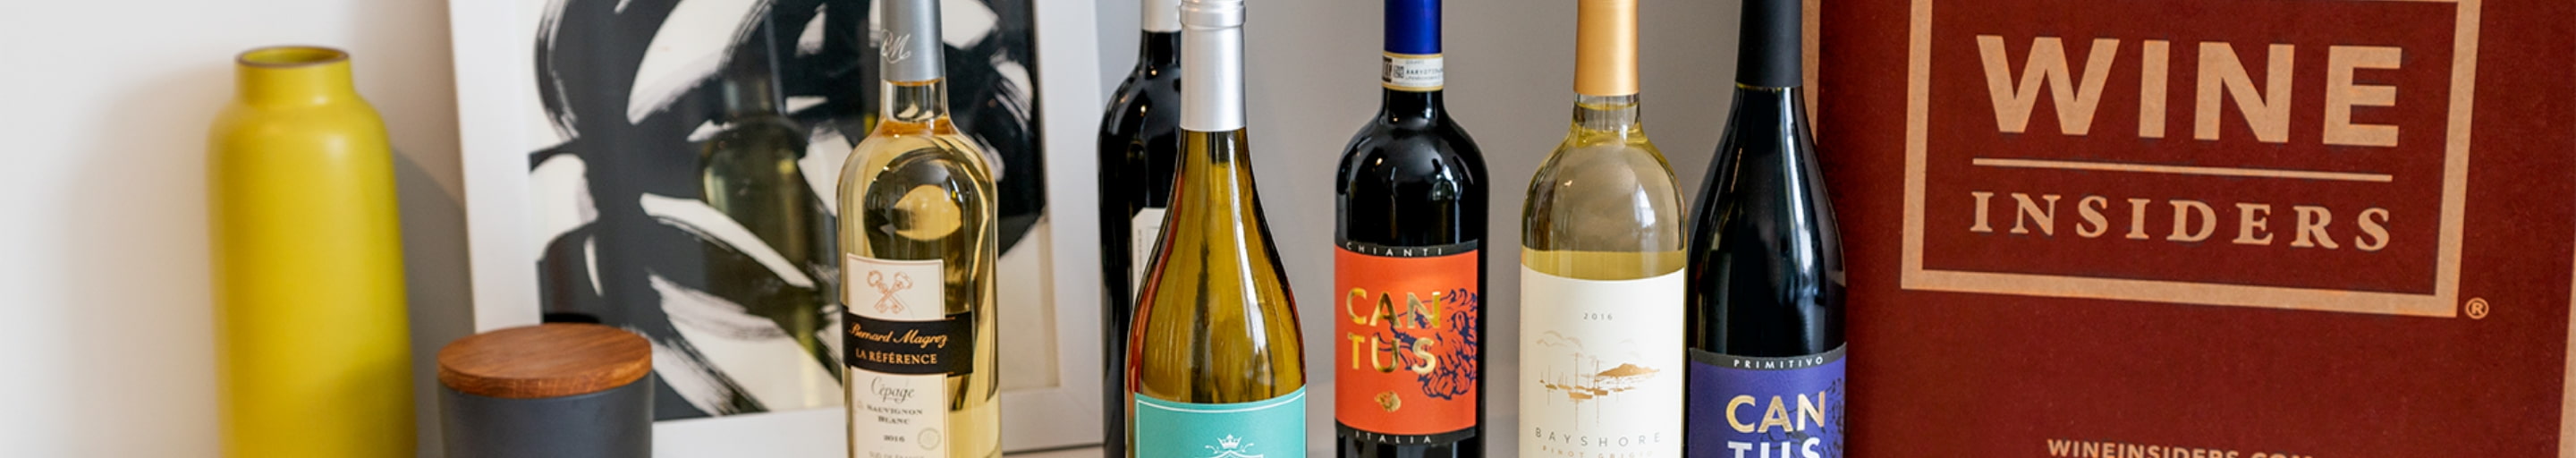 6-Bottle Wine Sets